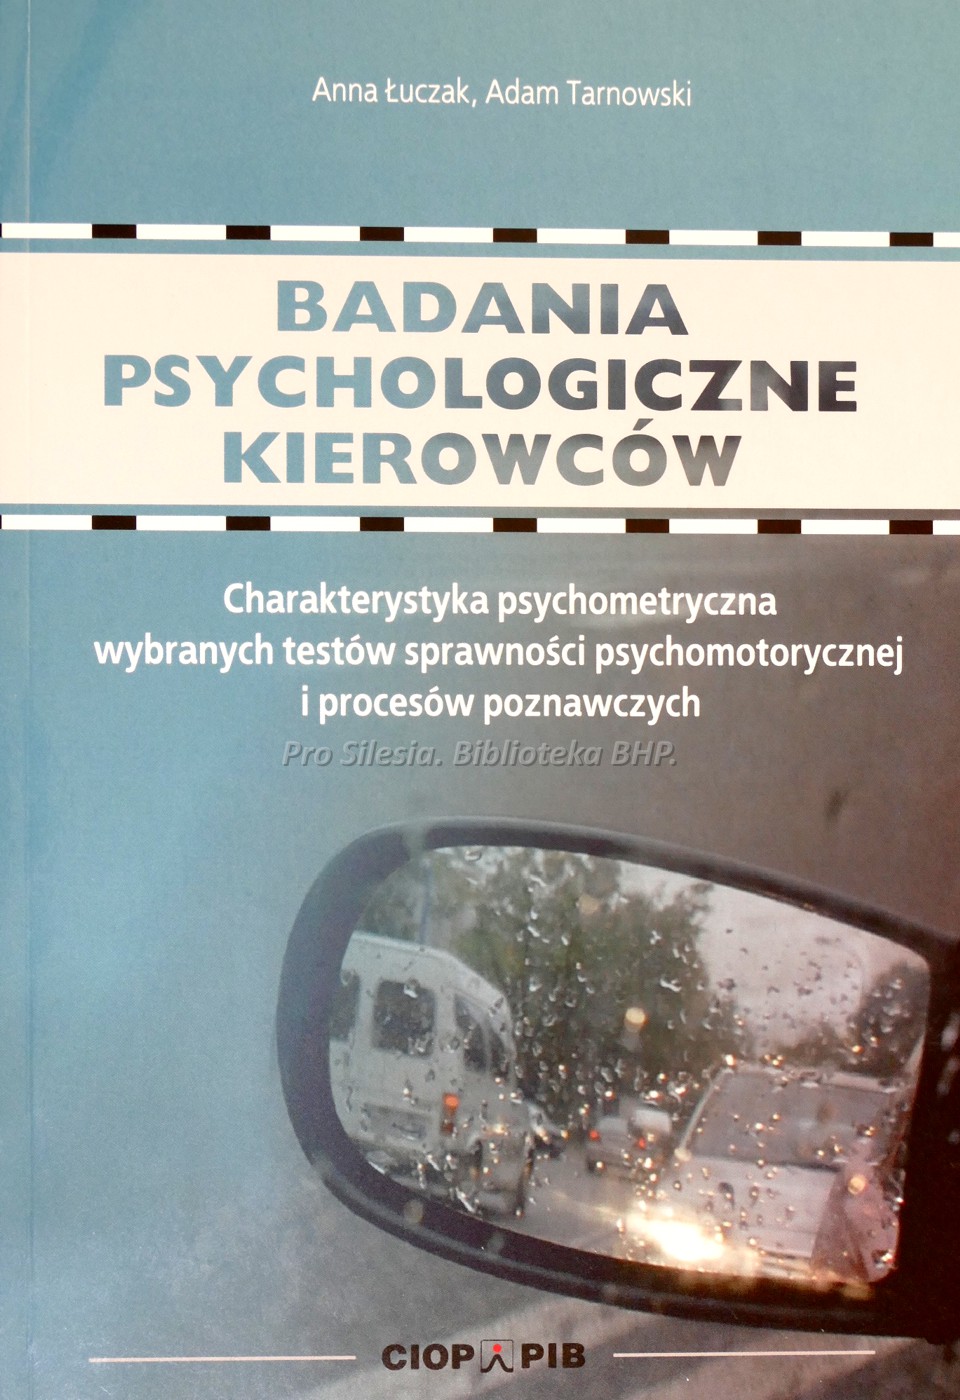 Badania psychologiczne kierowców charakterystyka psychometryczna wybranych testów sprawności psychomotorycznej i procesów poznawczych , wyd. CIOP-PIB